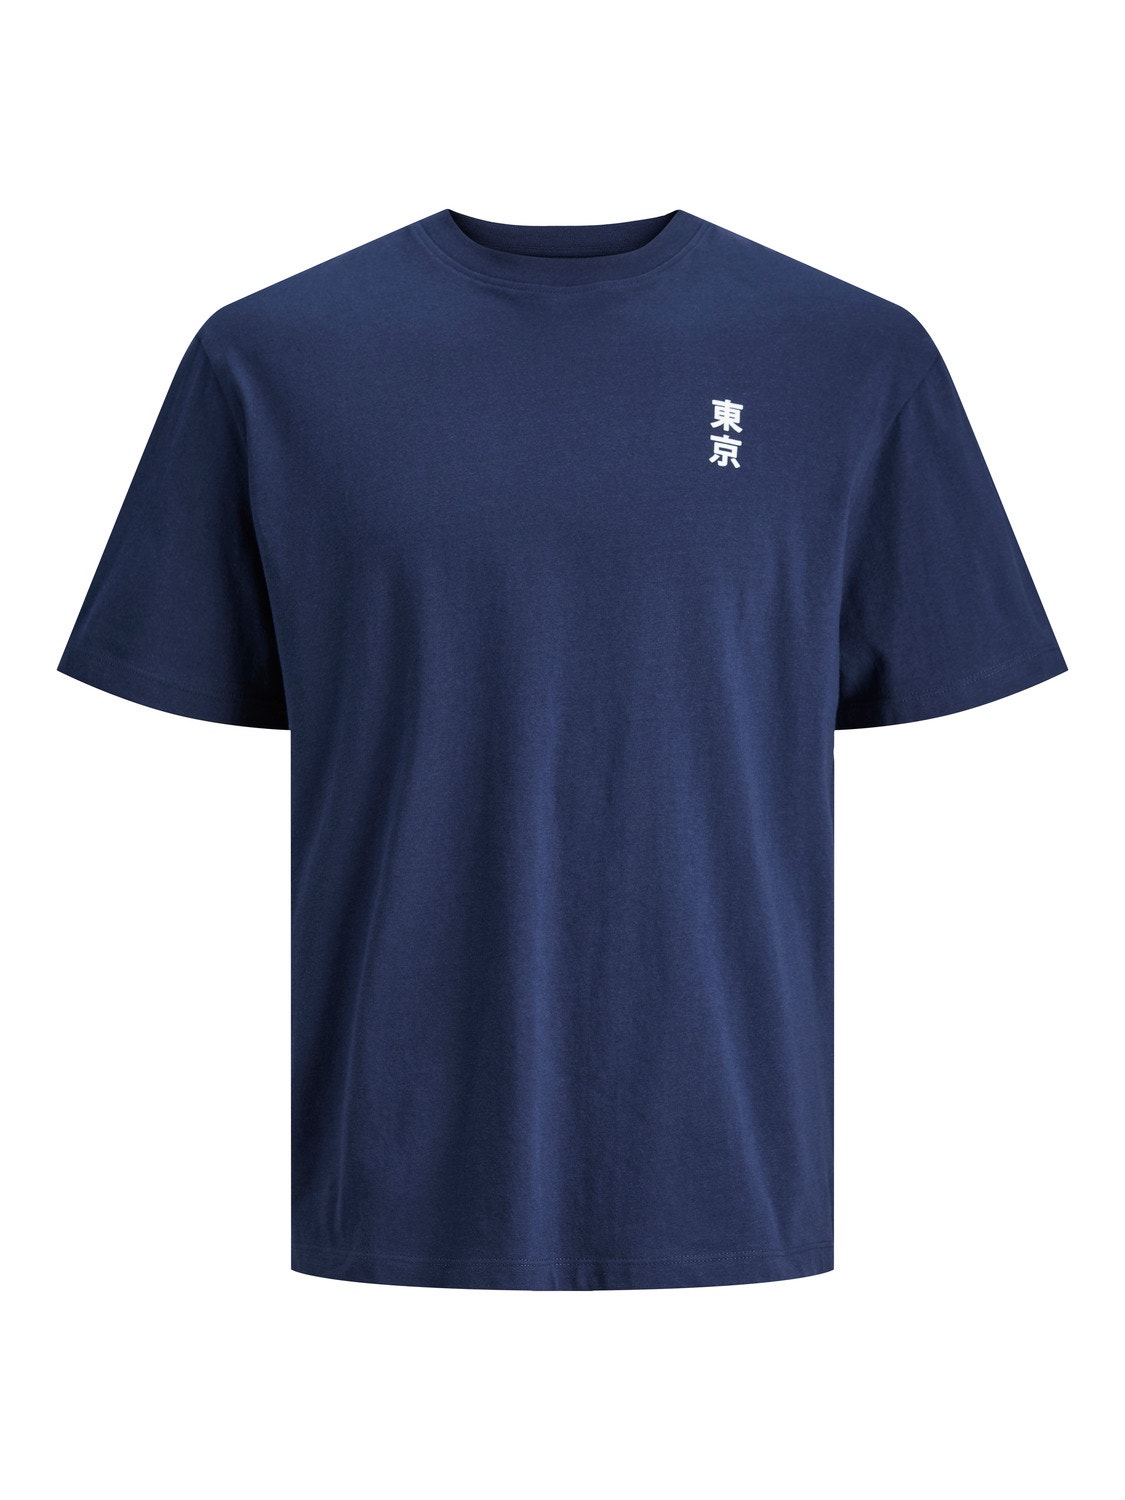 Jack & Jones Gedrukt T-shirt Voor jongens -Navy Blazer - 12247655